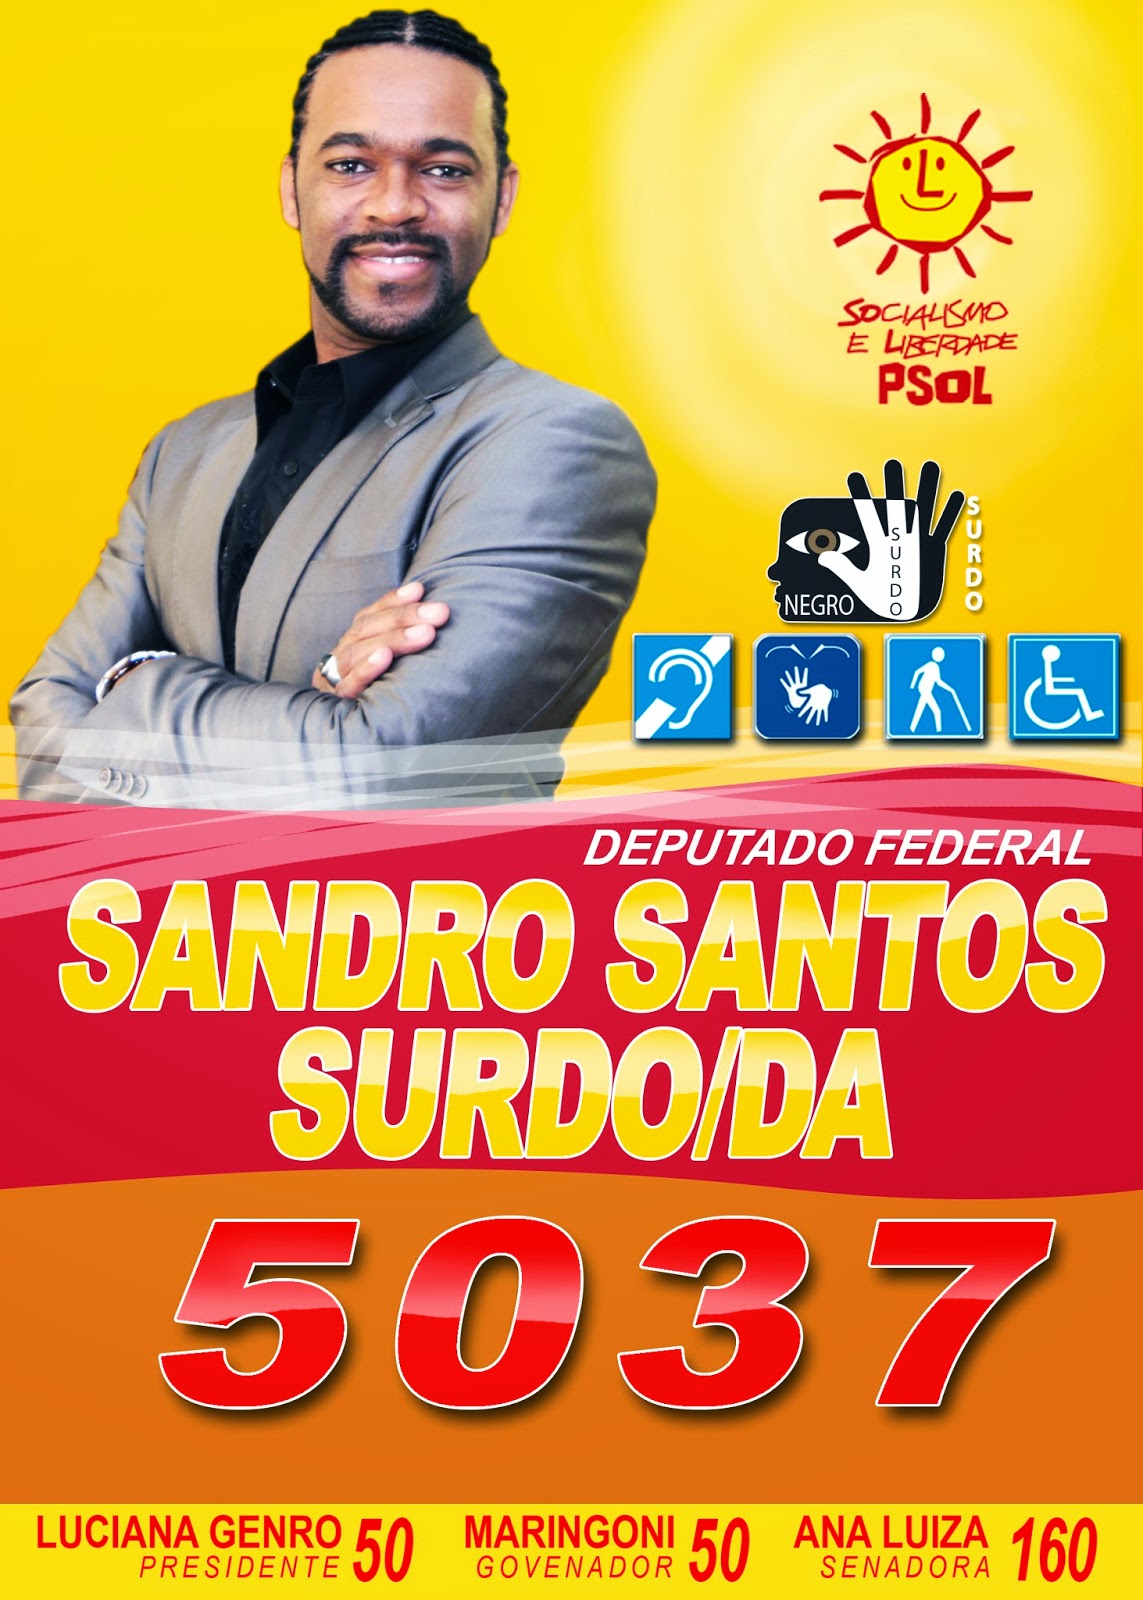 https://www.facebook.com/SandroSantosSurdo?ref=hl